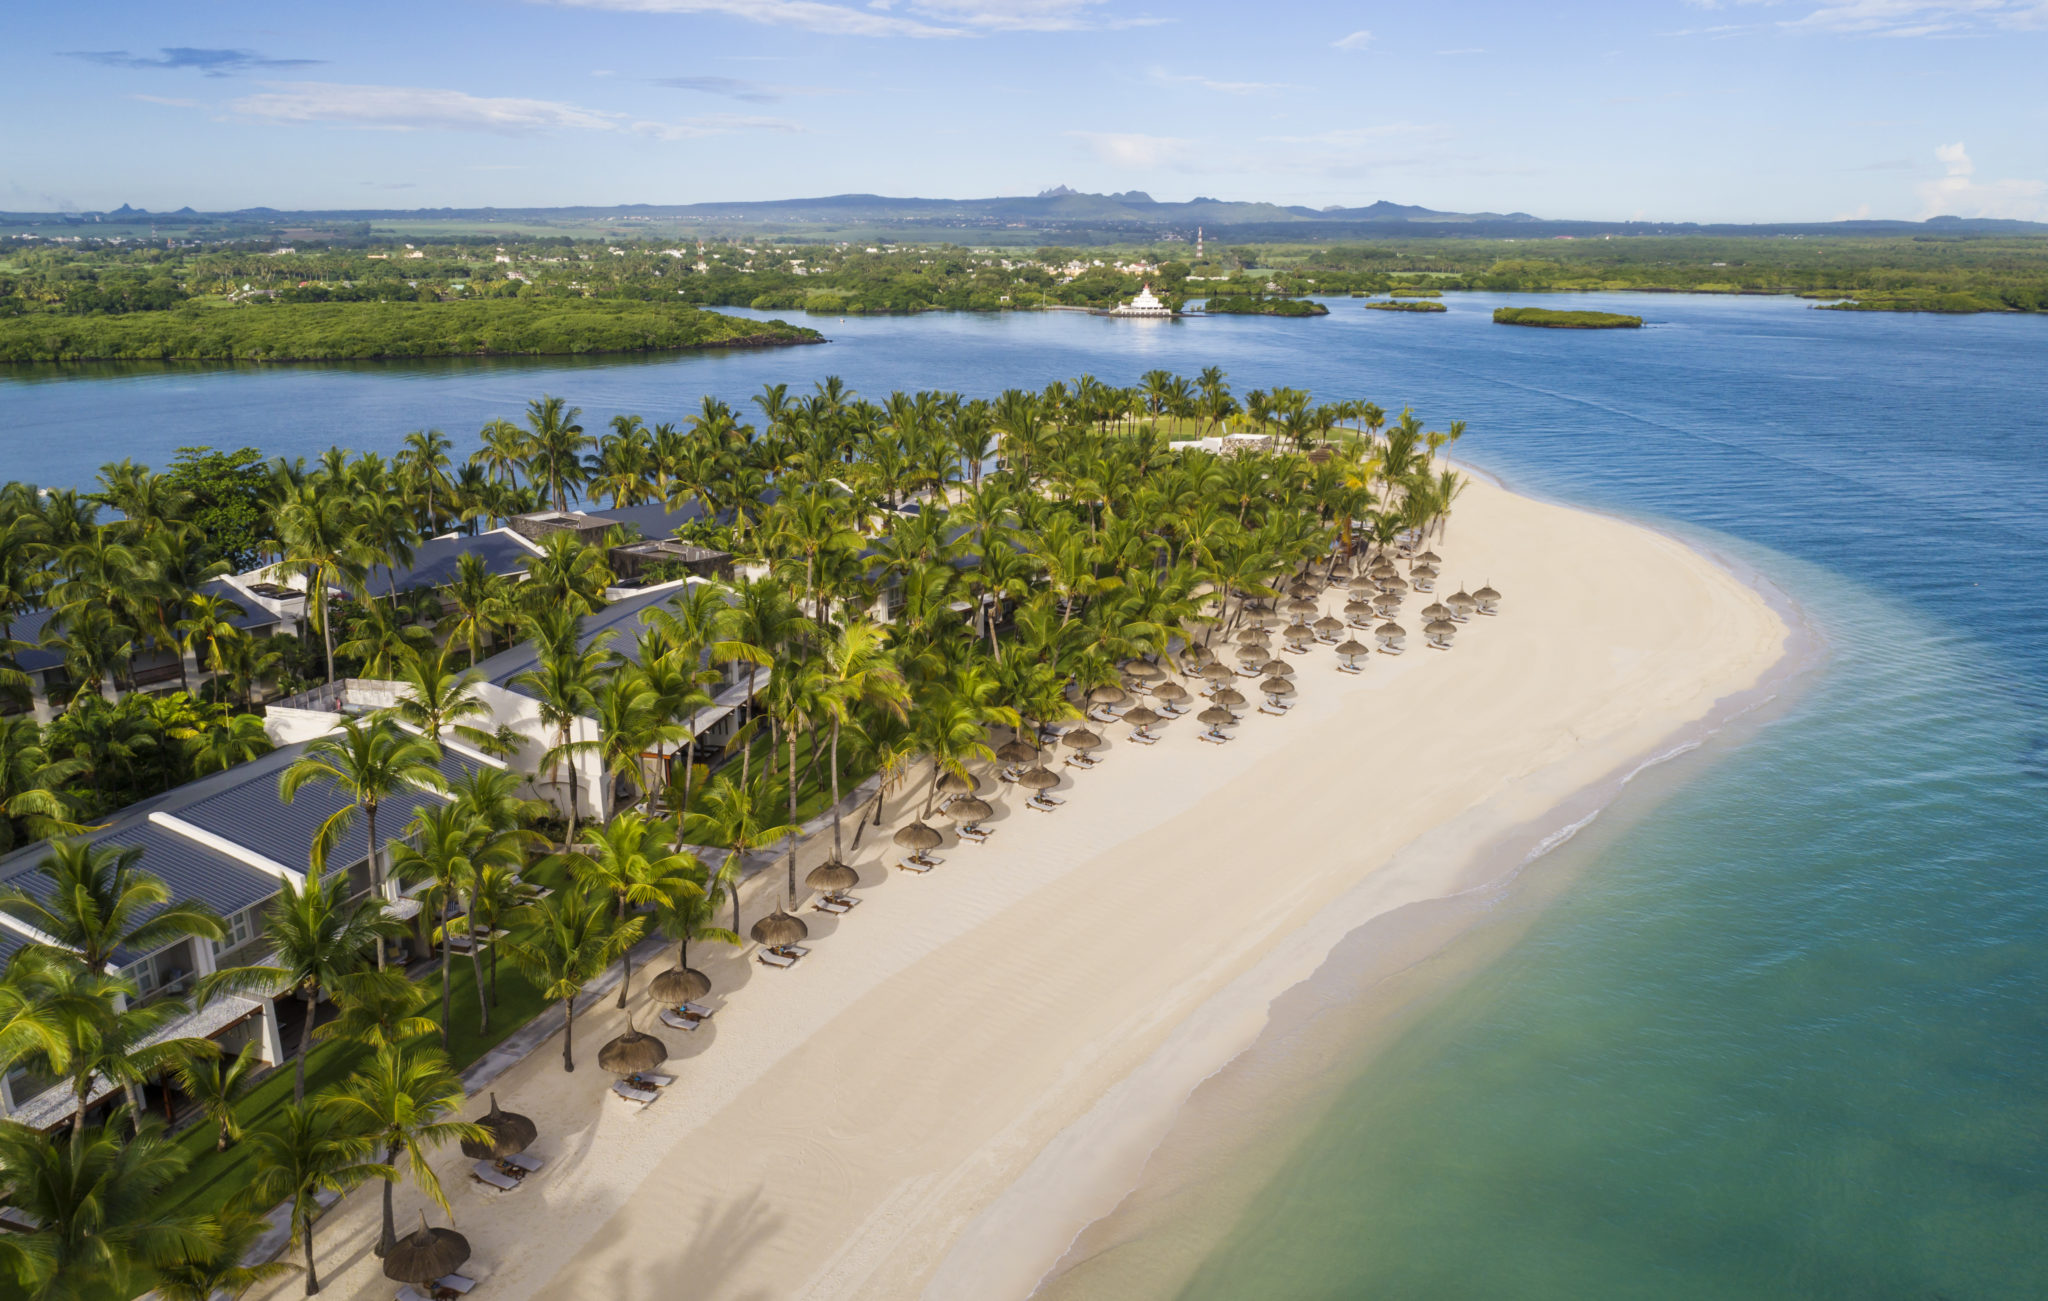 OO_LeSaintGéran_Resort_Aerial_View_02_Le_Saint_Geran_Mauritius_Det_Indiske_Ocean